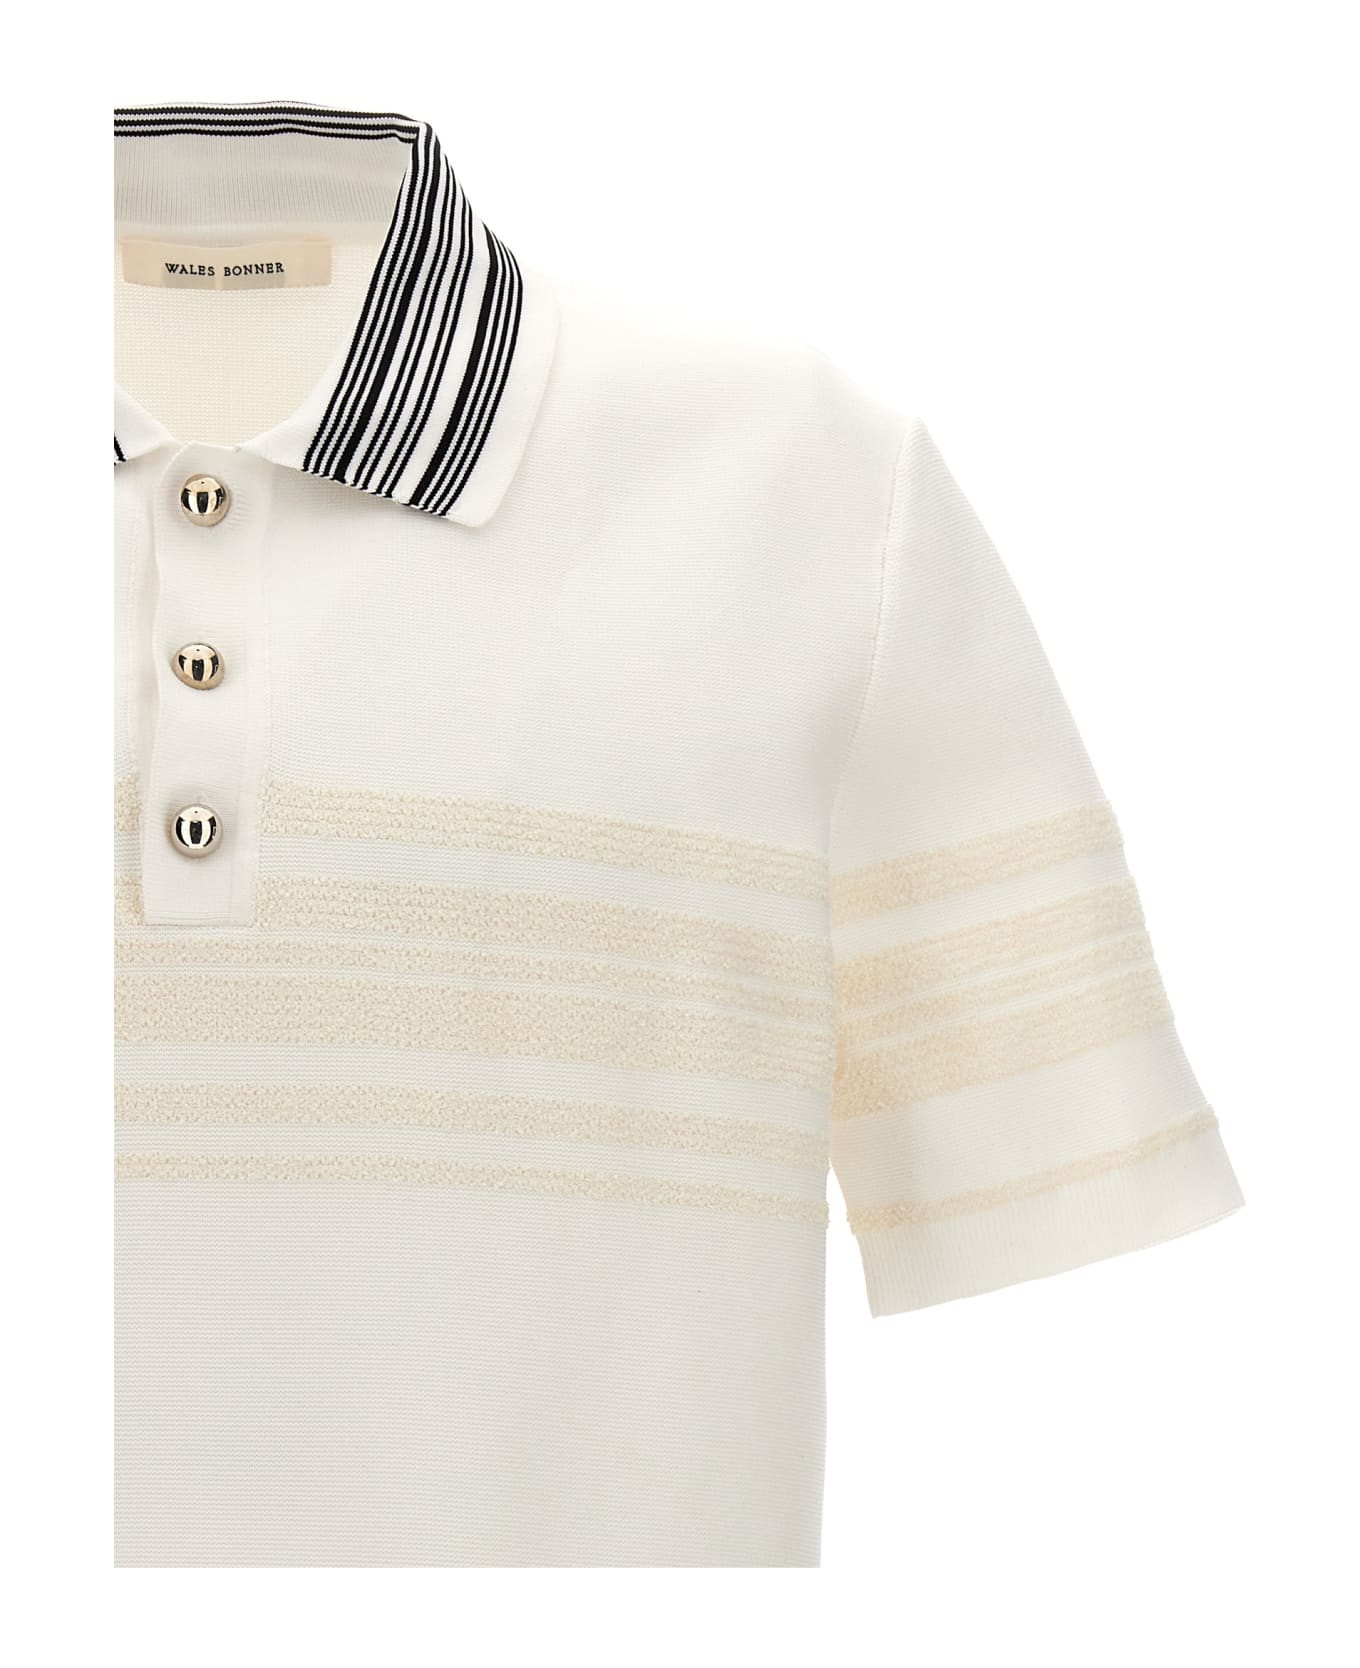 Wales Bonner 'dawn' Polo Shirt - White